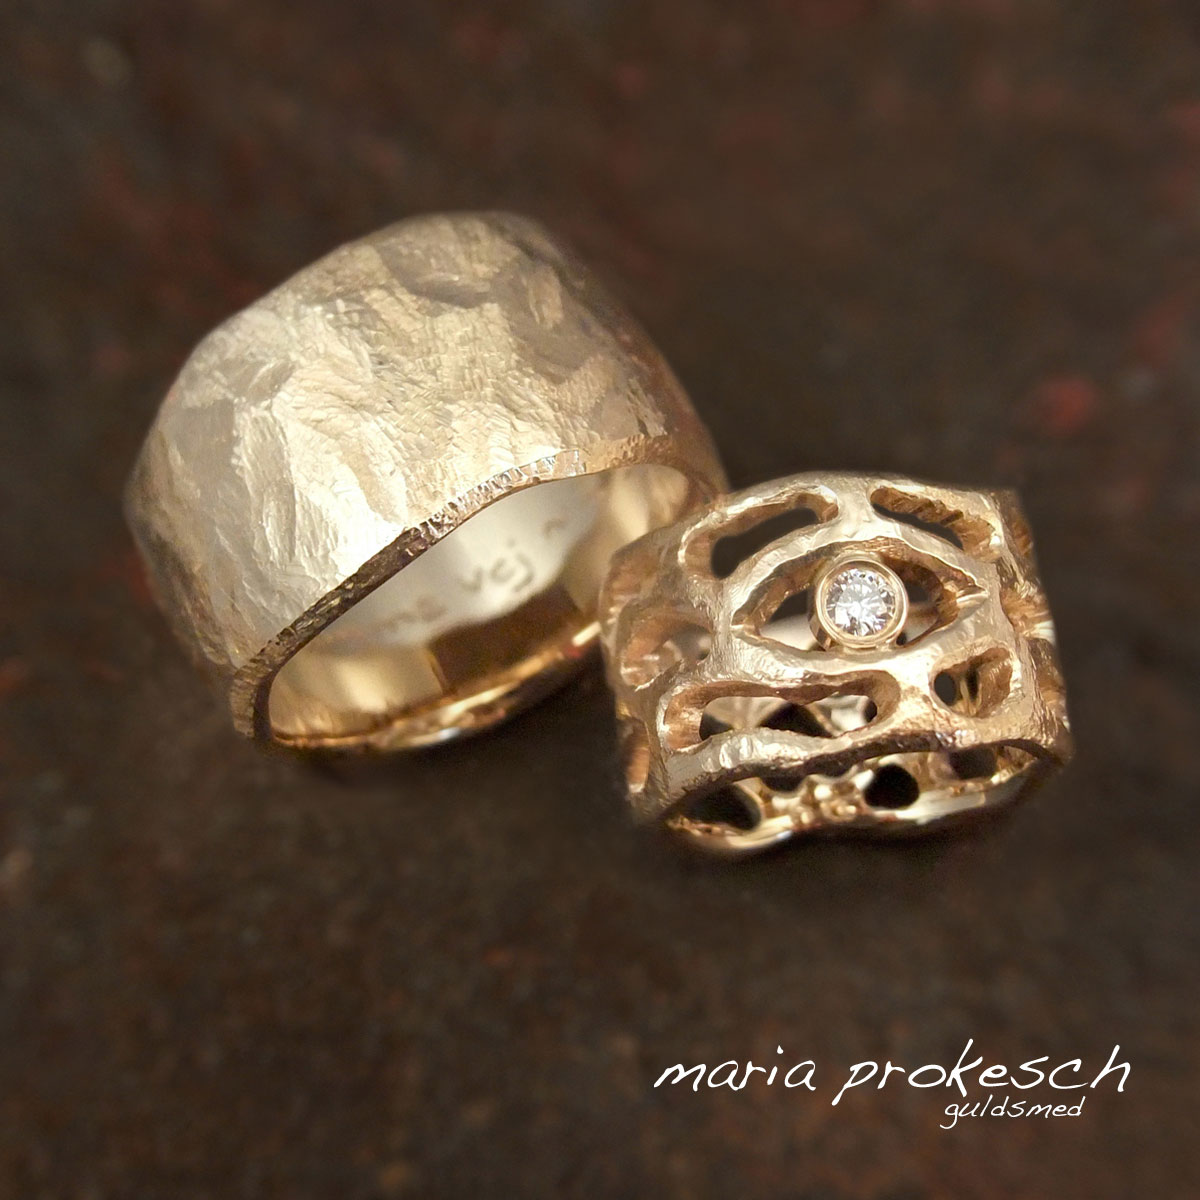 Et par forskellige og personlige vielsesringe, i 14 karat rustik guld med symbol for det tredje øje på kvinde ring. Mandering er grov rustik. Begge ringe med en bredde der passer deres hånd. Håndlavet efter kundens unikke ønsker